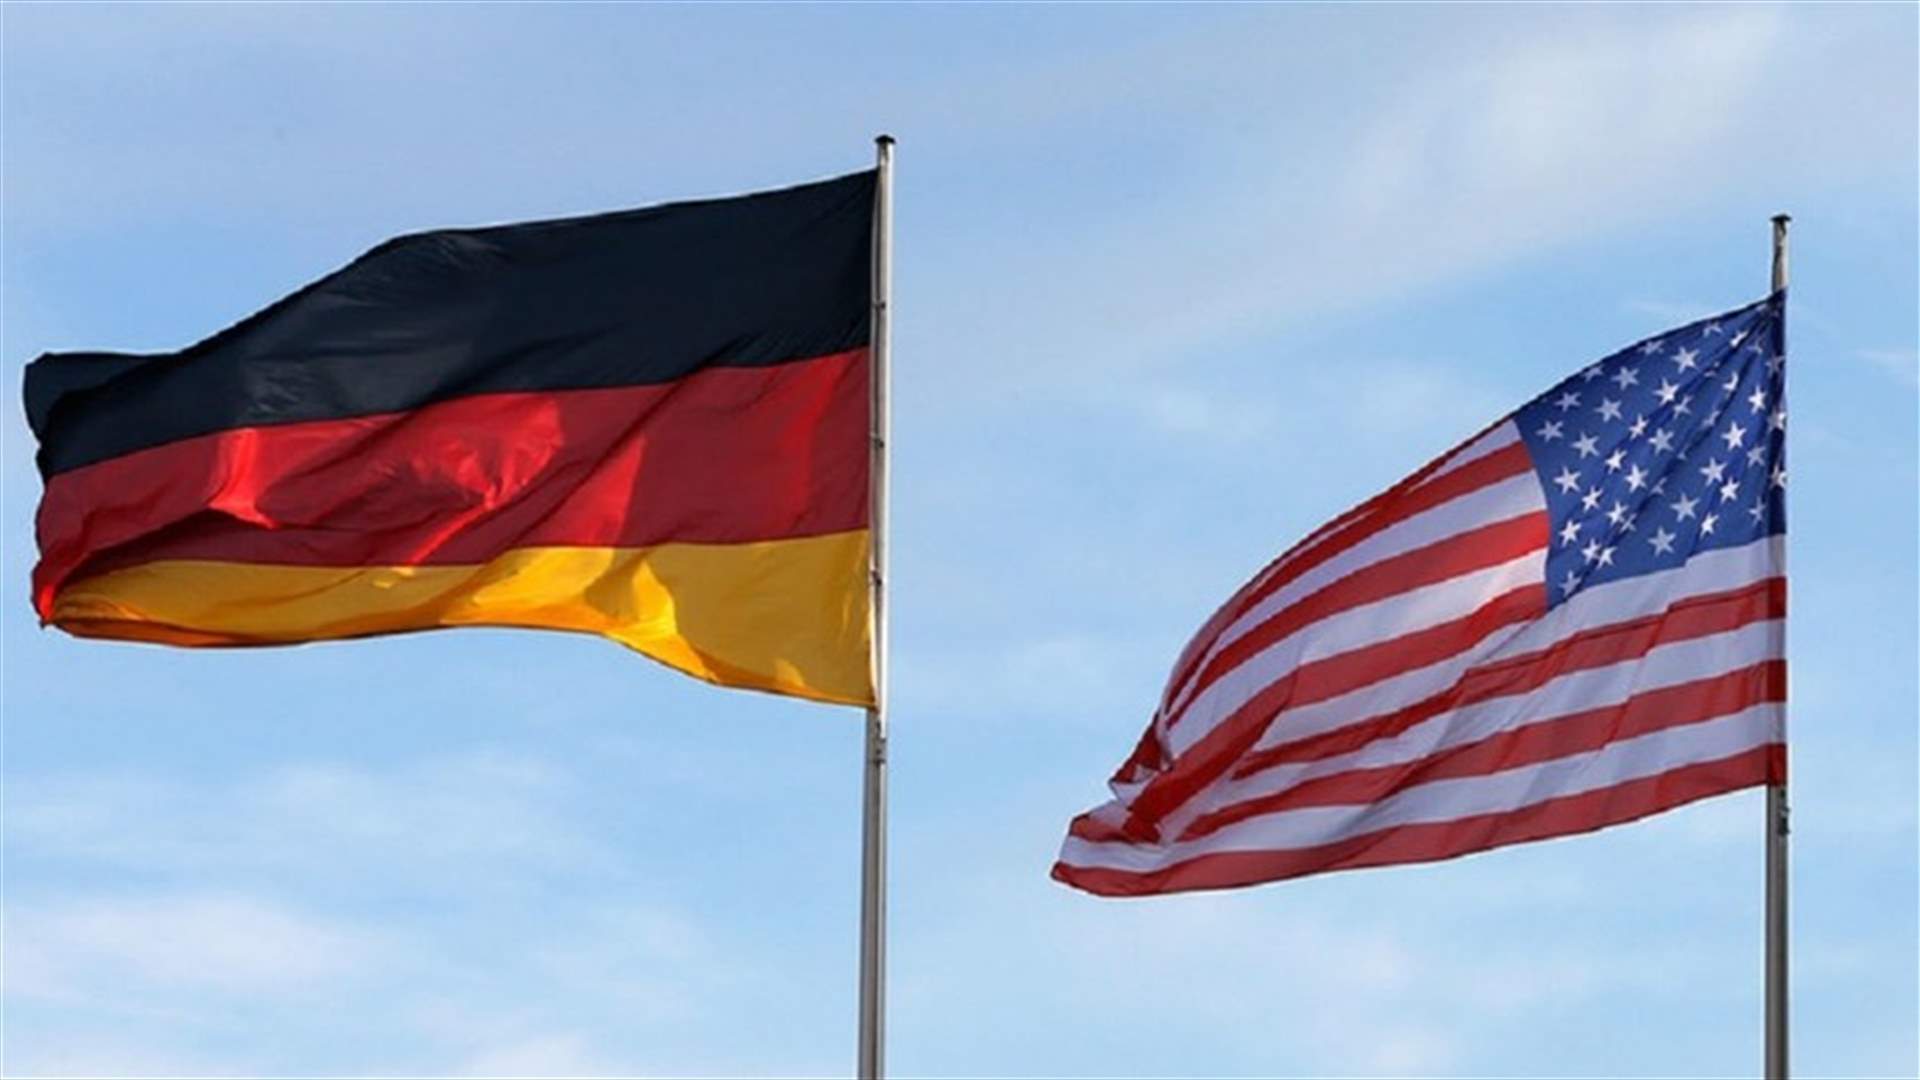 المانيا تدعو الى الحوار في مواجهة الحمائية الاميركية